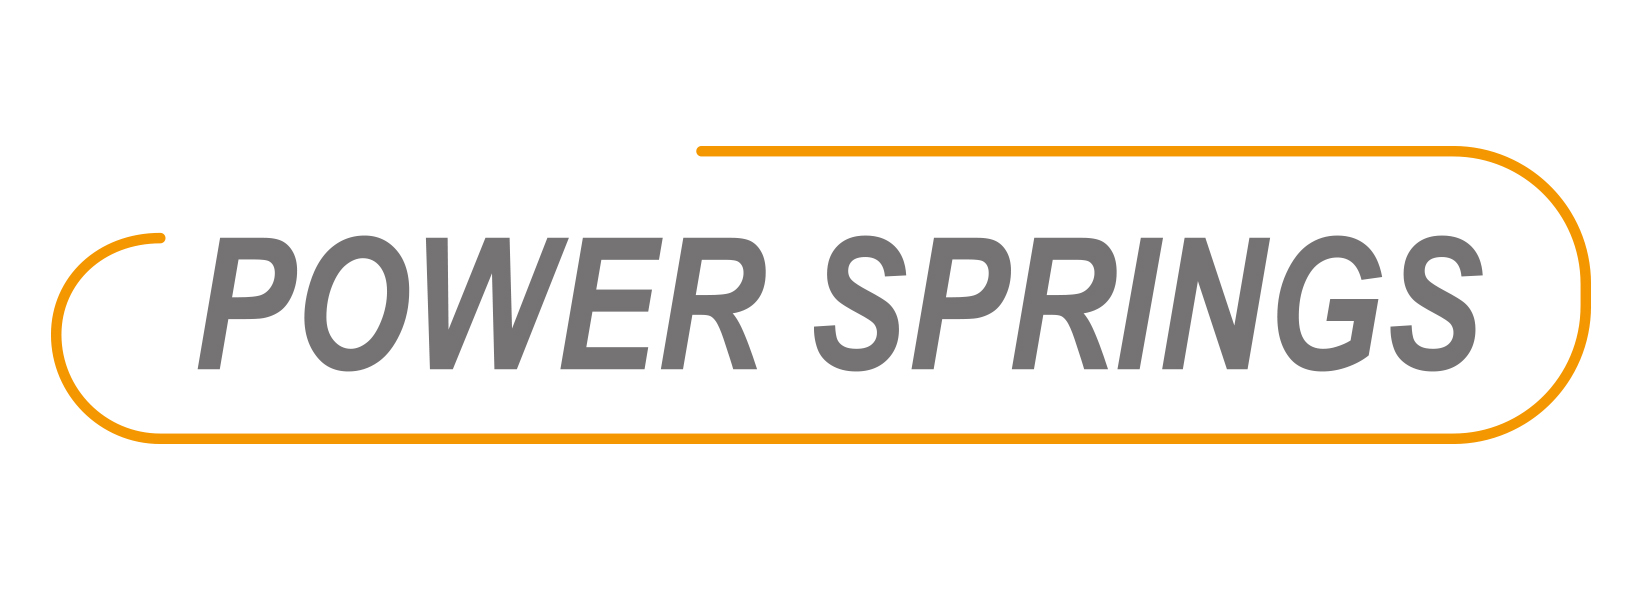 Power Springs für 06, 48 Federn 14cm - Standard Edition